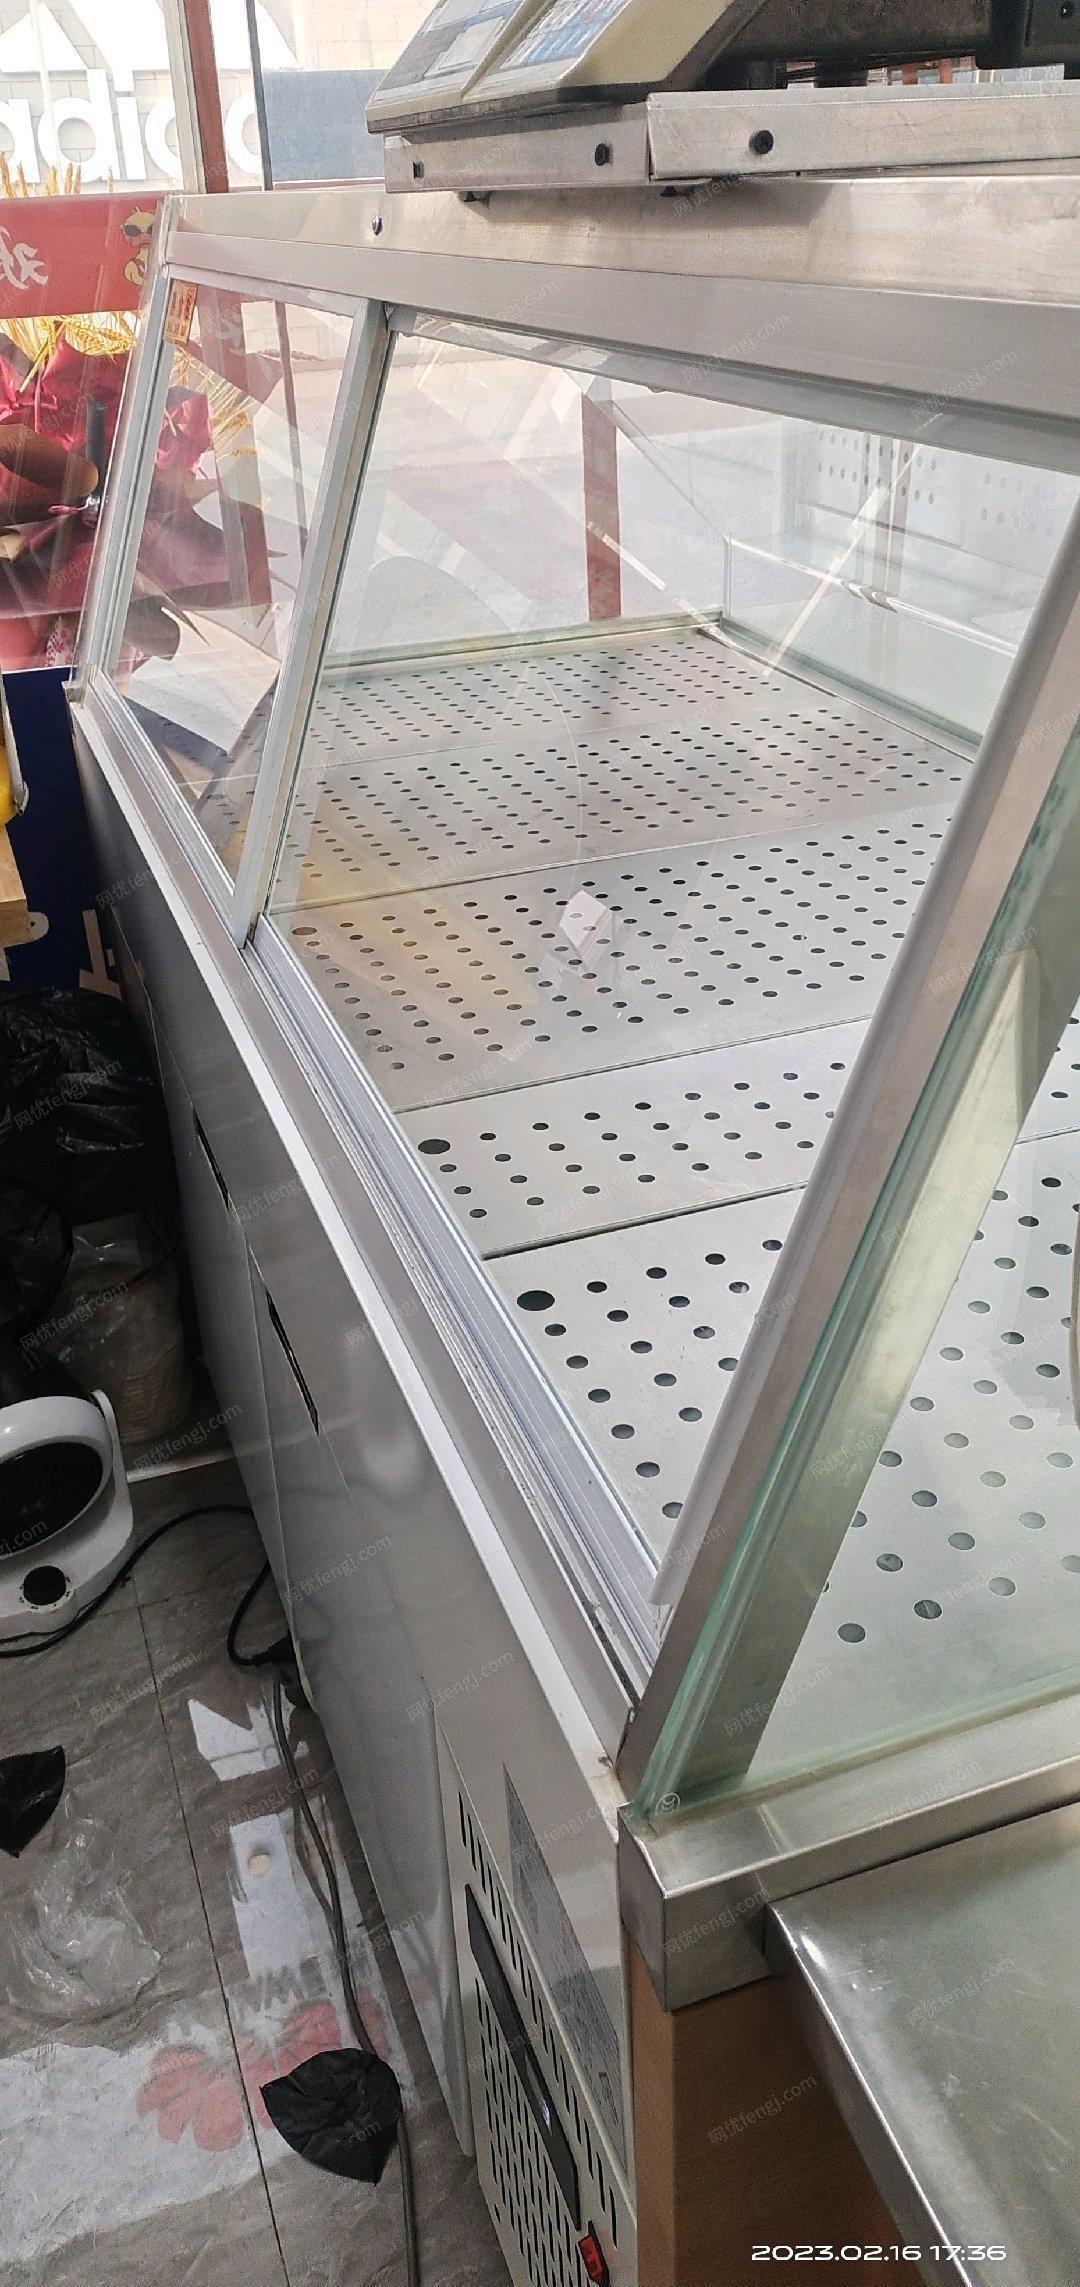 宁夏银川出售熟食展示柜长1.8米-宽0.95米